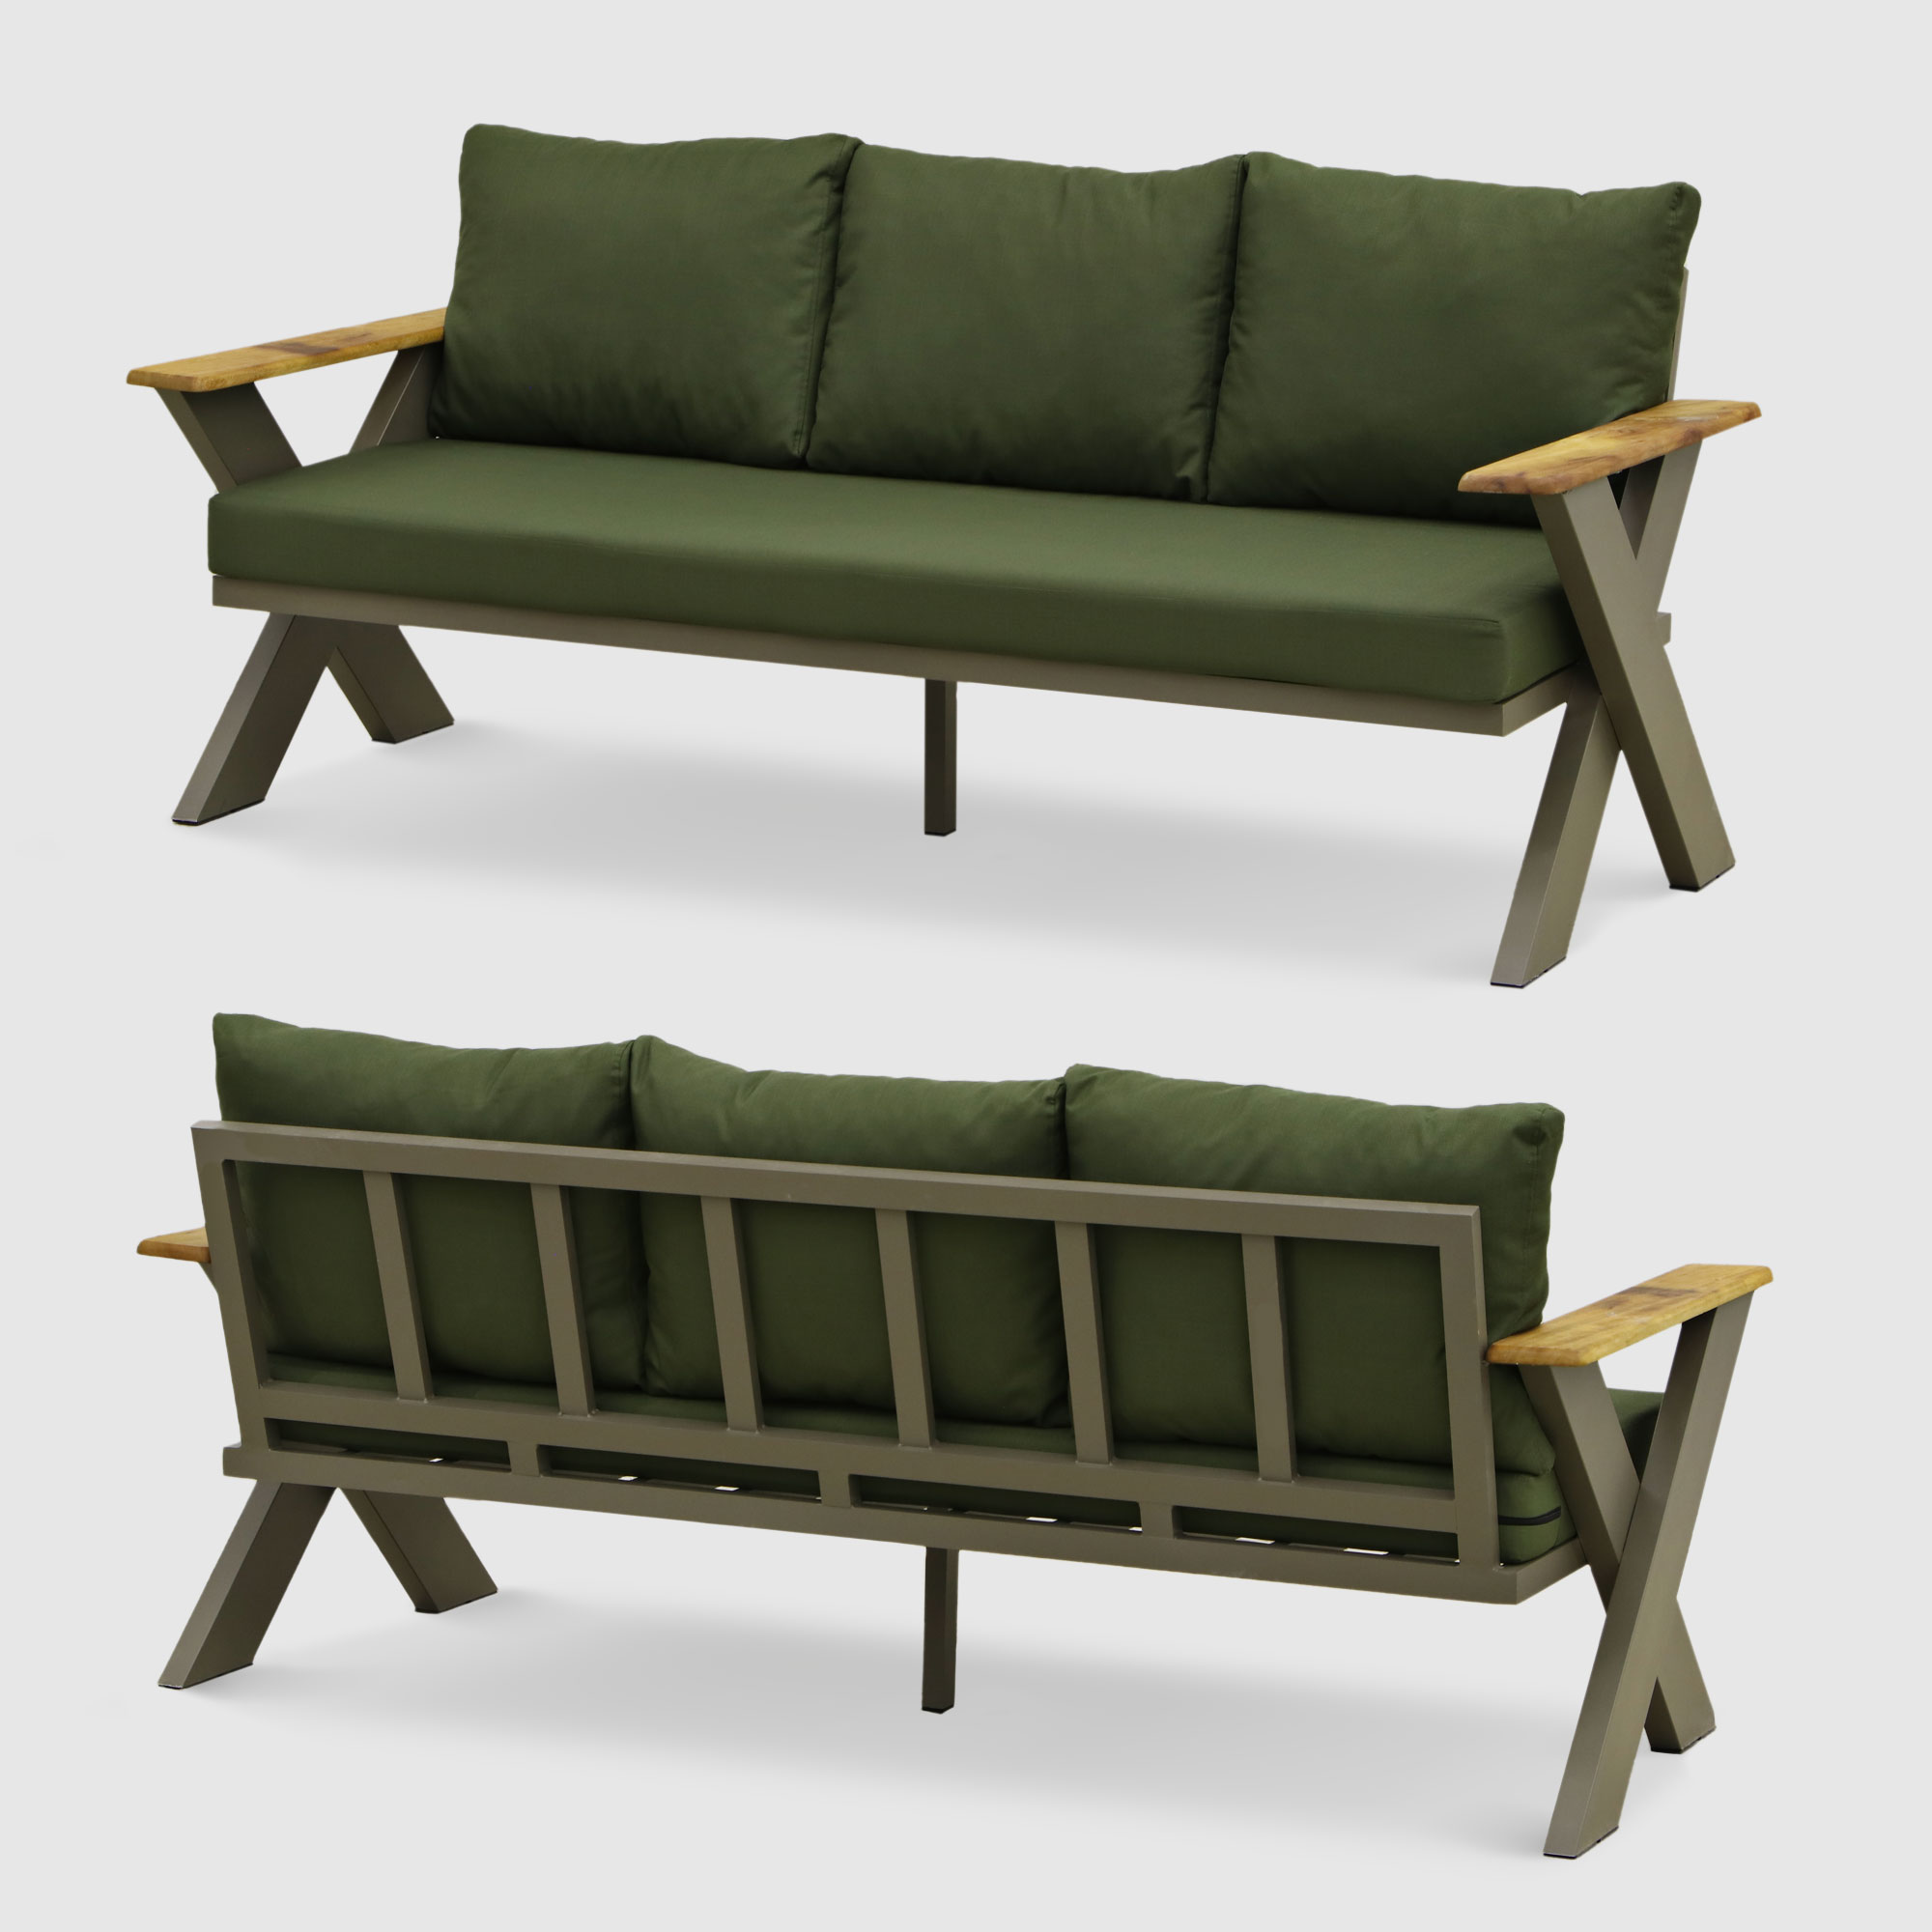 Комплект мебели Emek garden Toledo зеленый 4 предмета, цвет оливковый, размер 170х80х90 - фото 4